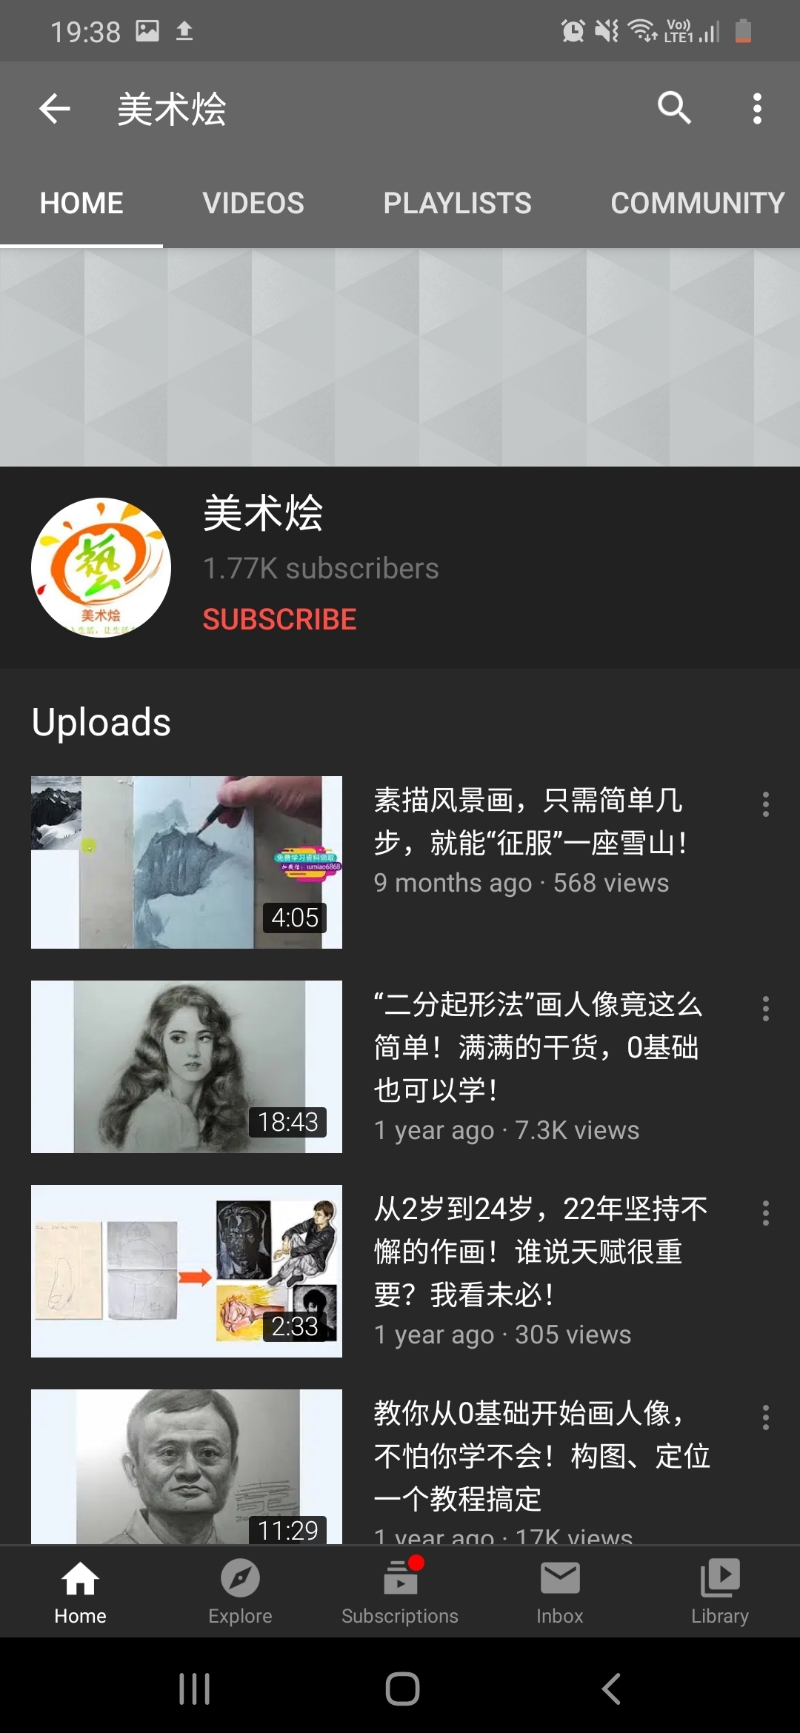 美术烩Youtube频道的主页。